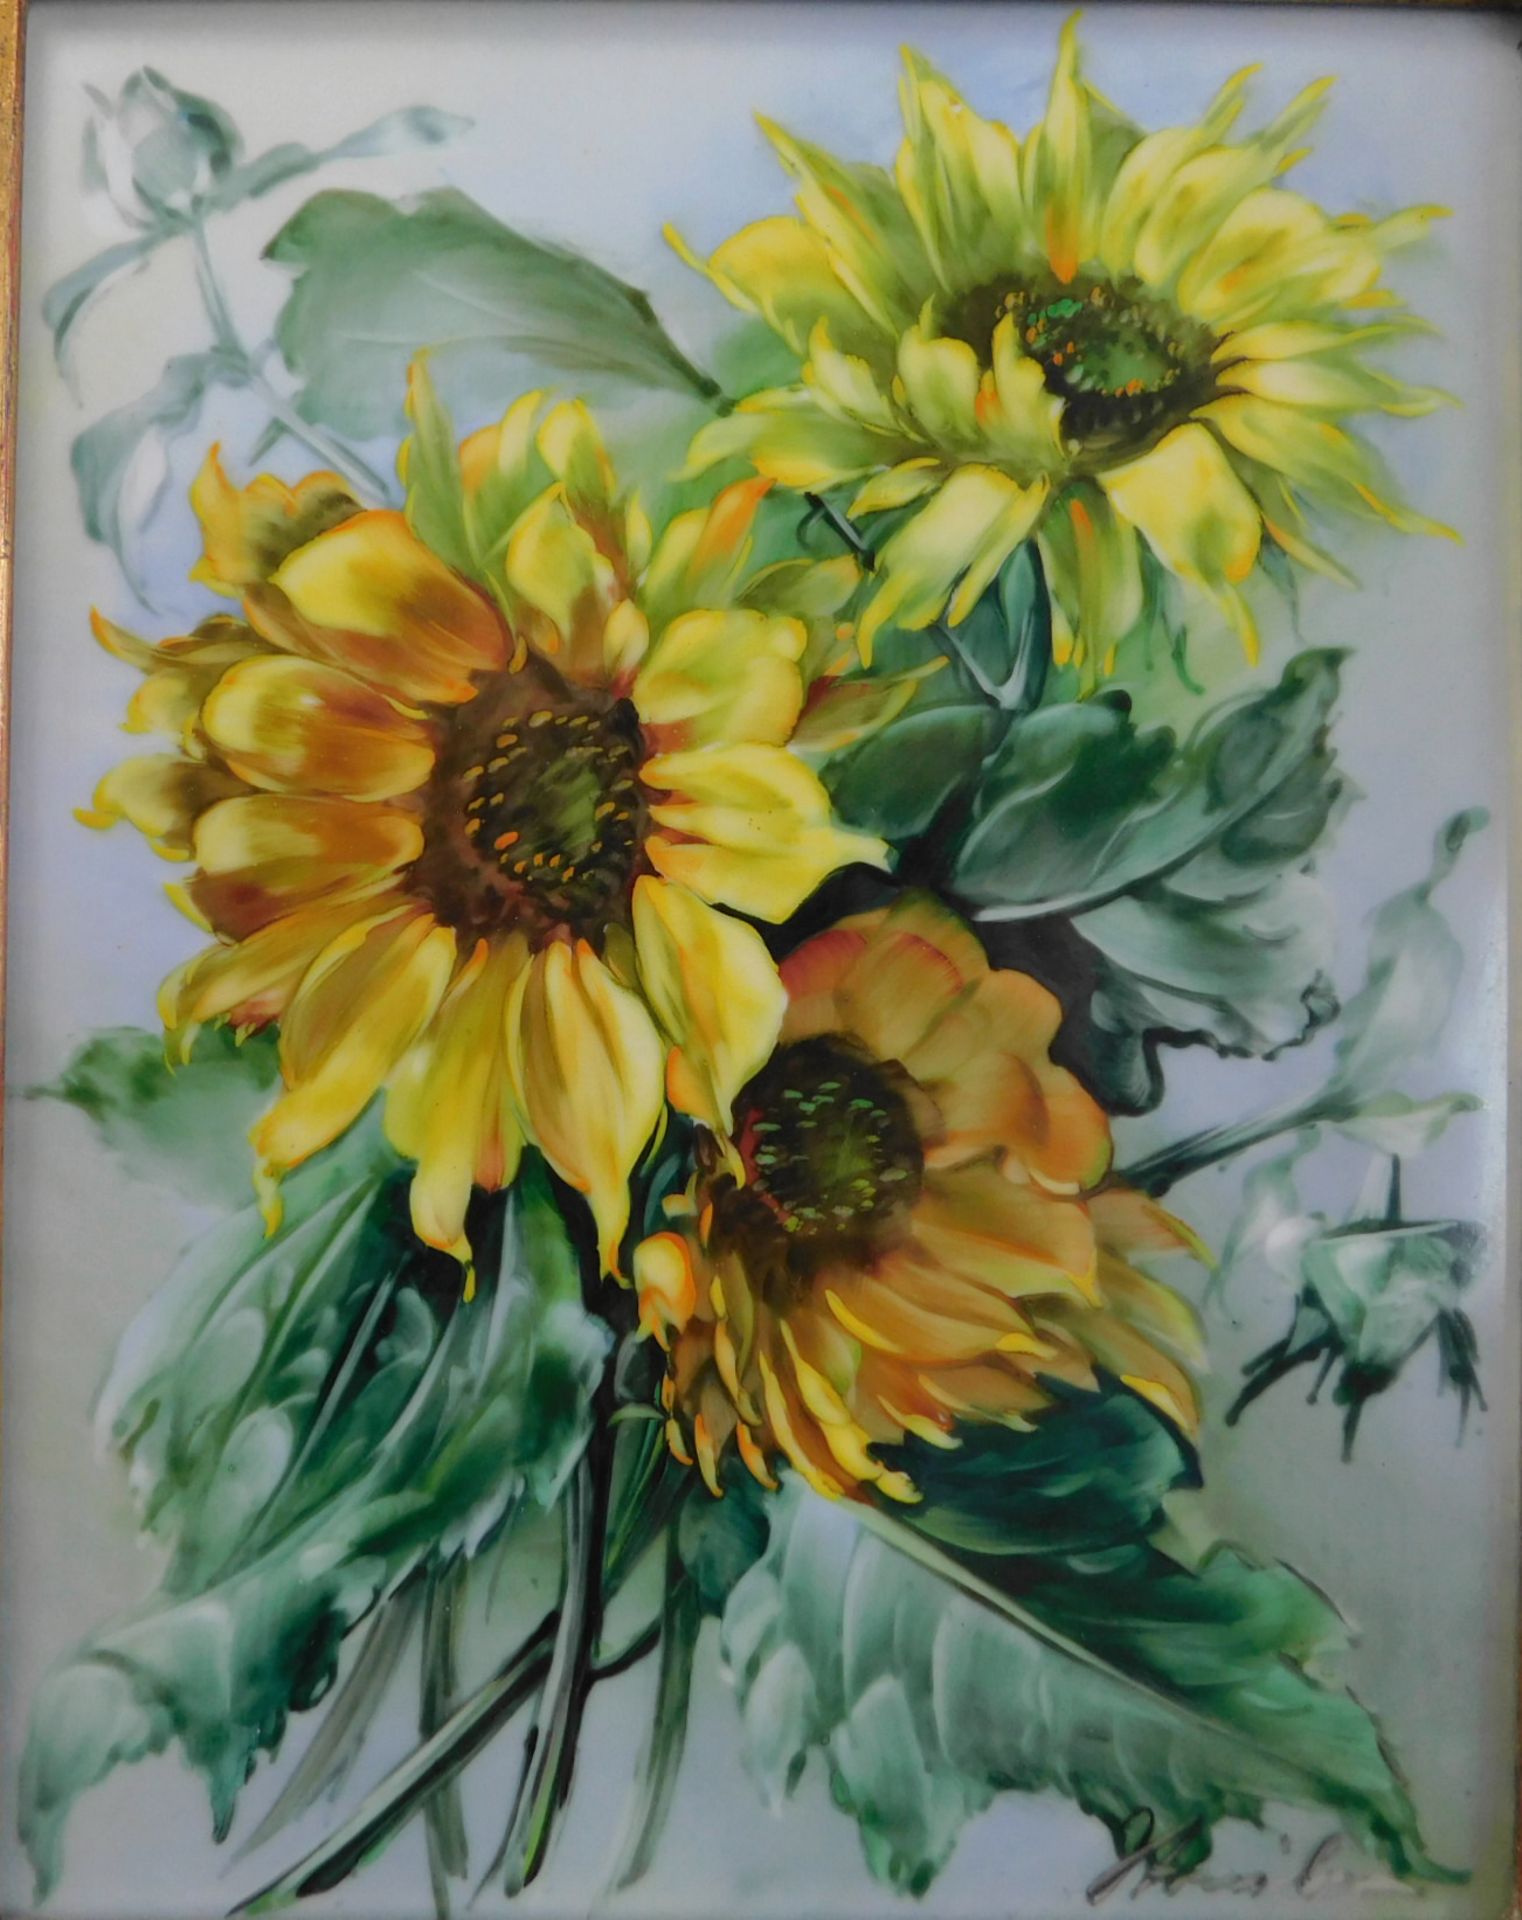 Porzellanbild handgemalt, Rosenthal, 1950er Jahre, Nr. 1 Sonnenblumen, signiert unten rechts, m. - Image 2 of 3